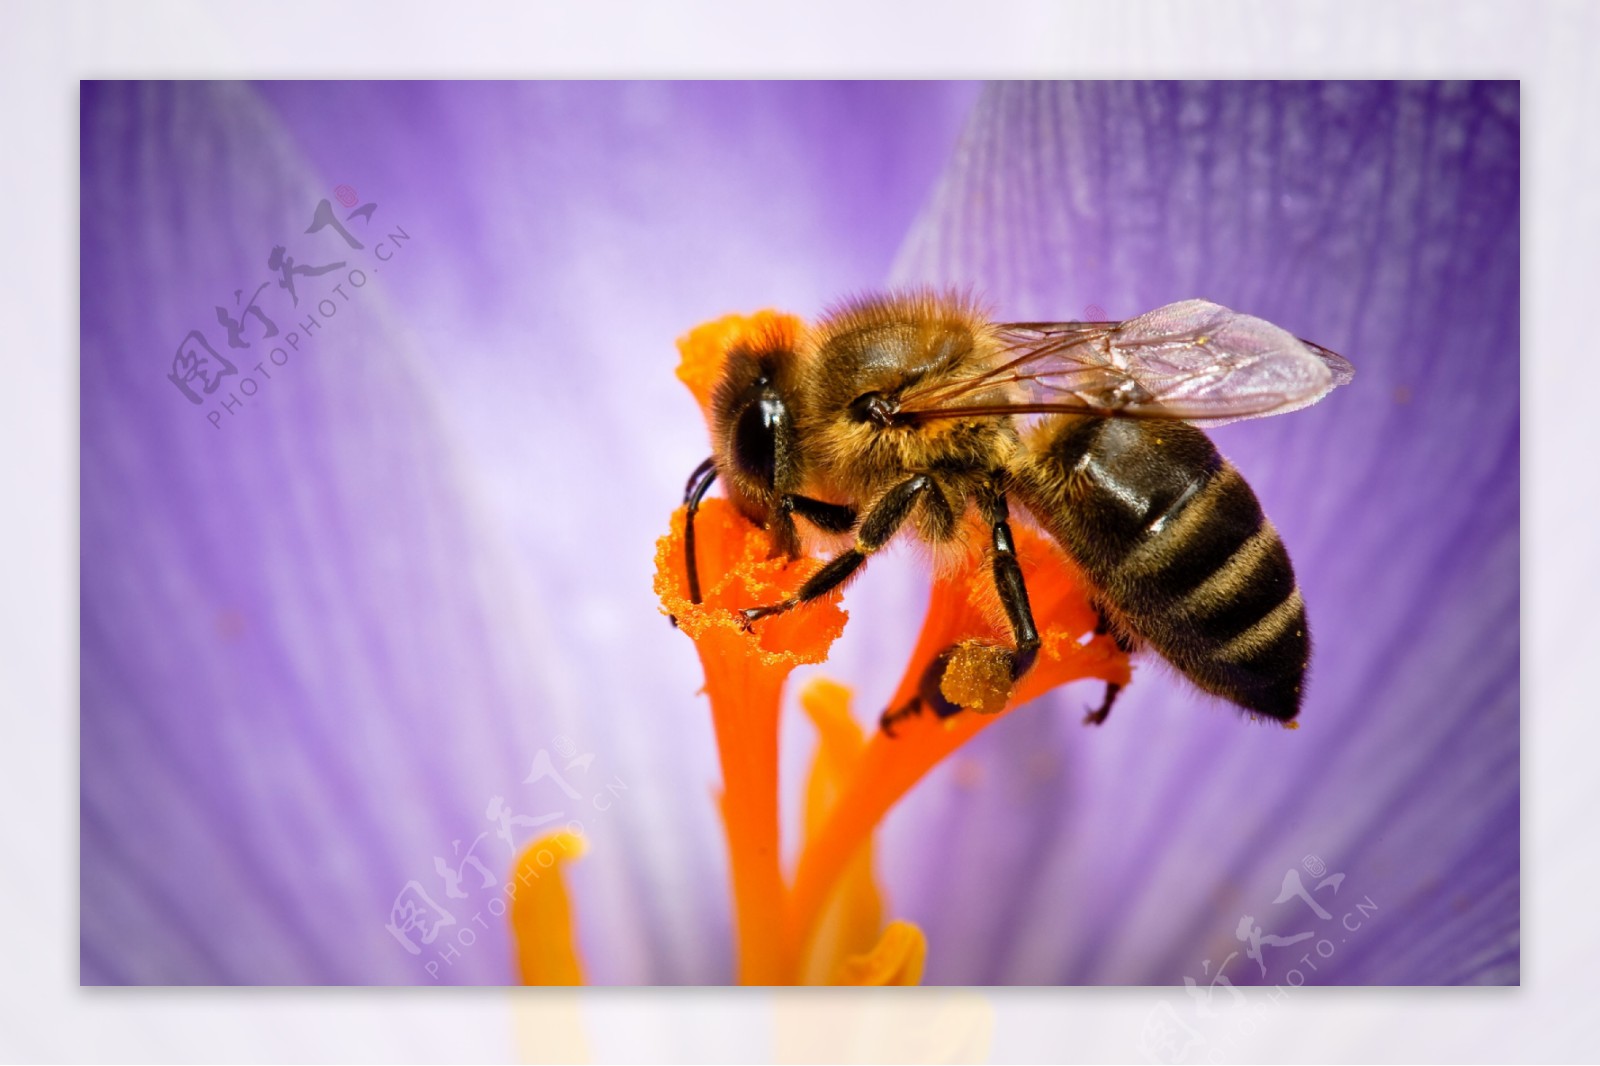 蜜蜂,蜜蜂高清壁纸的照片,高清图片,摄影-纯色壁纸